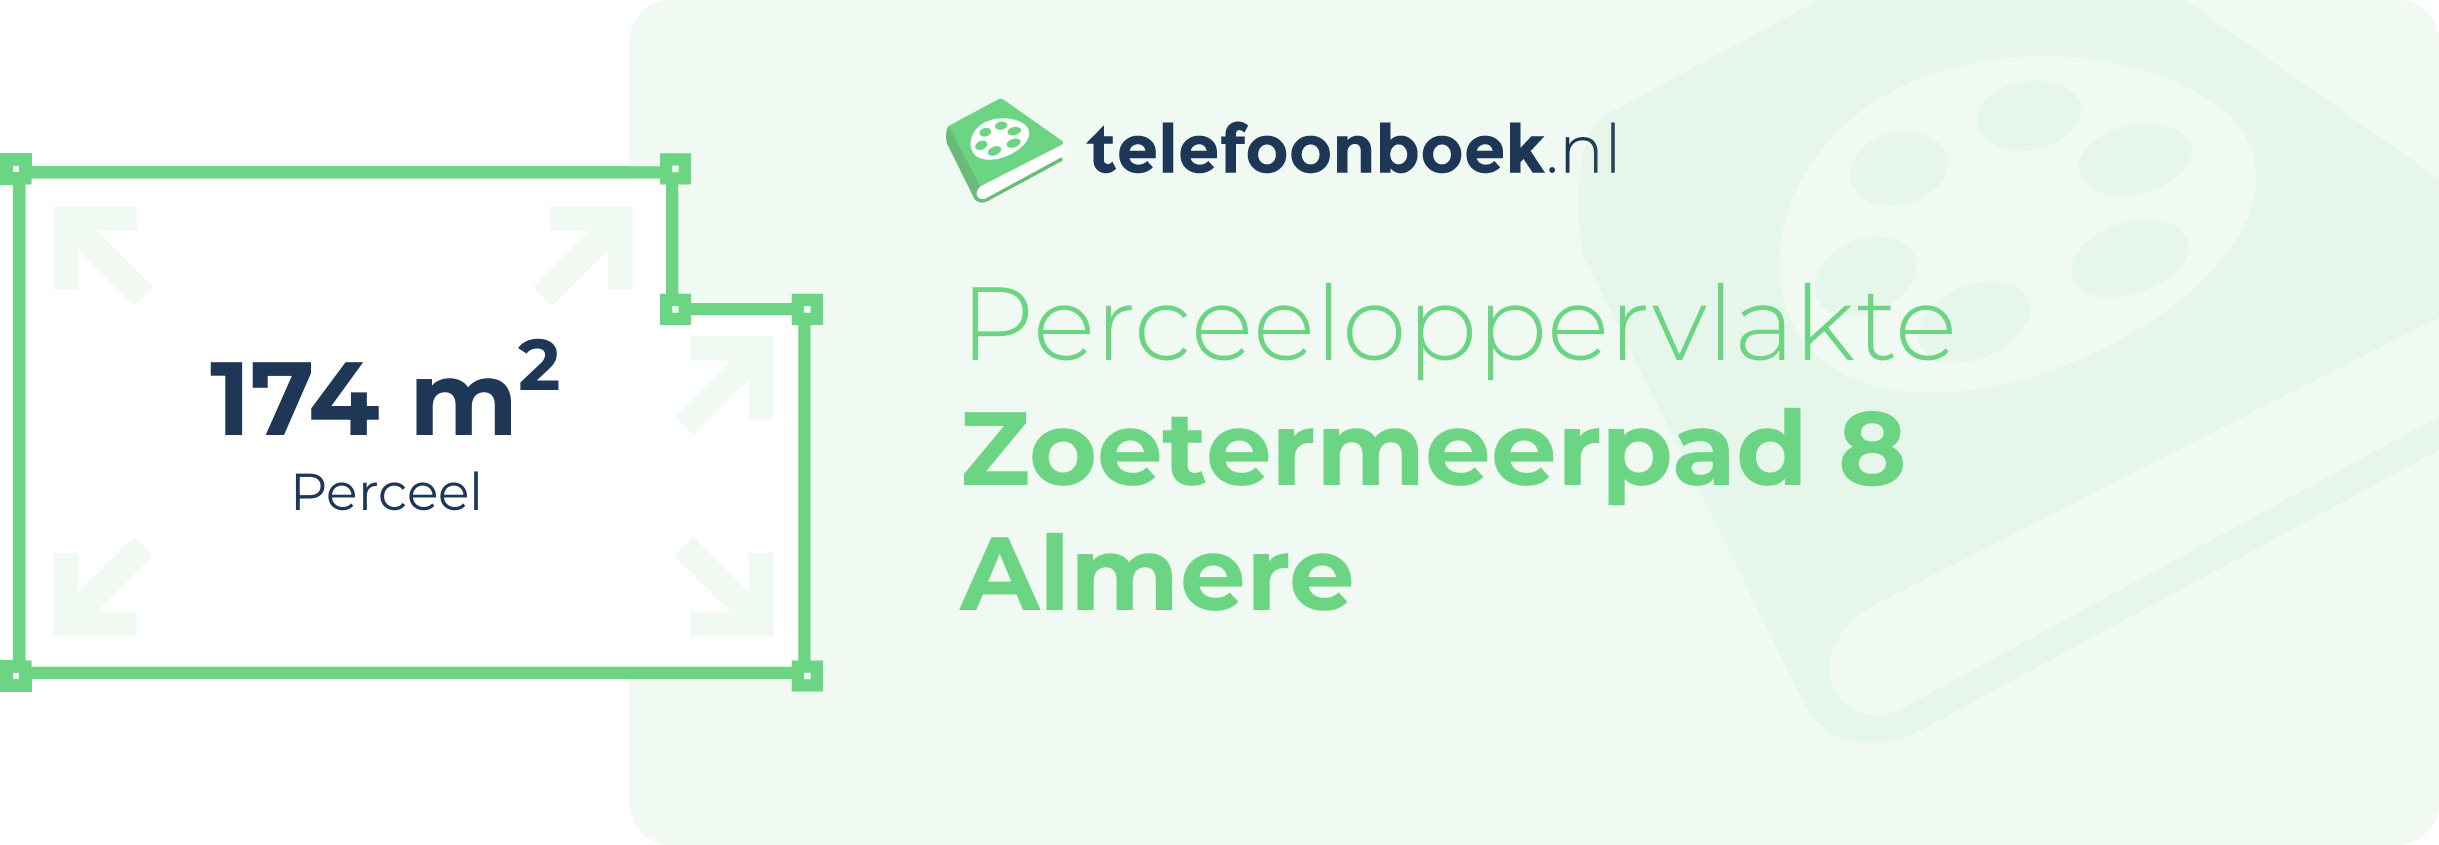 Perceeloppervlakte Zoetermeerpad 8 Almere